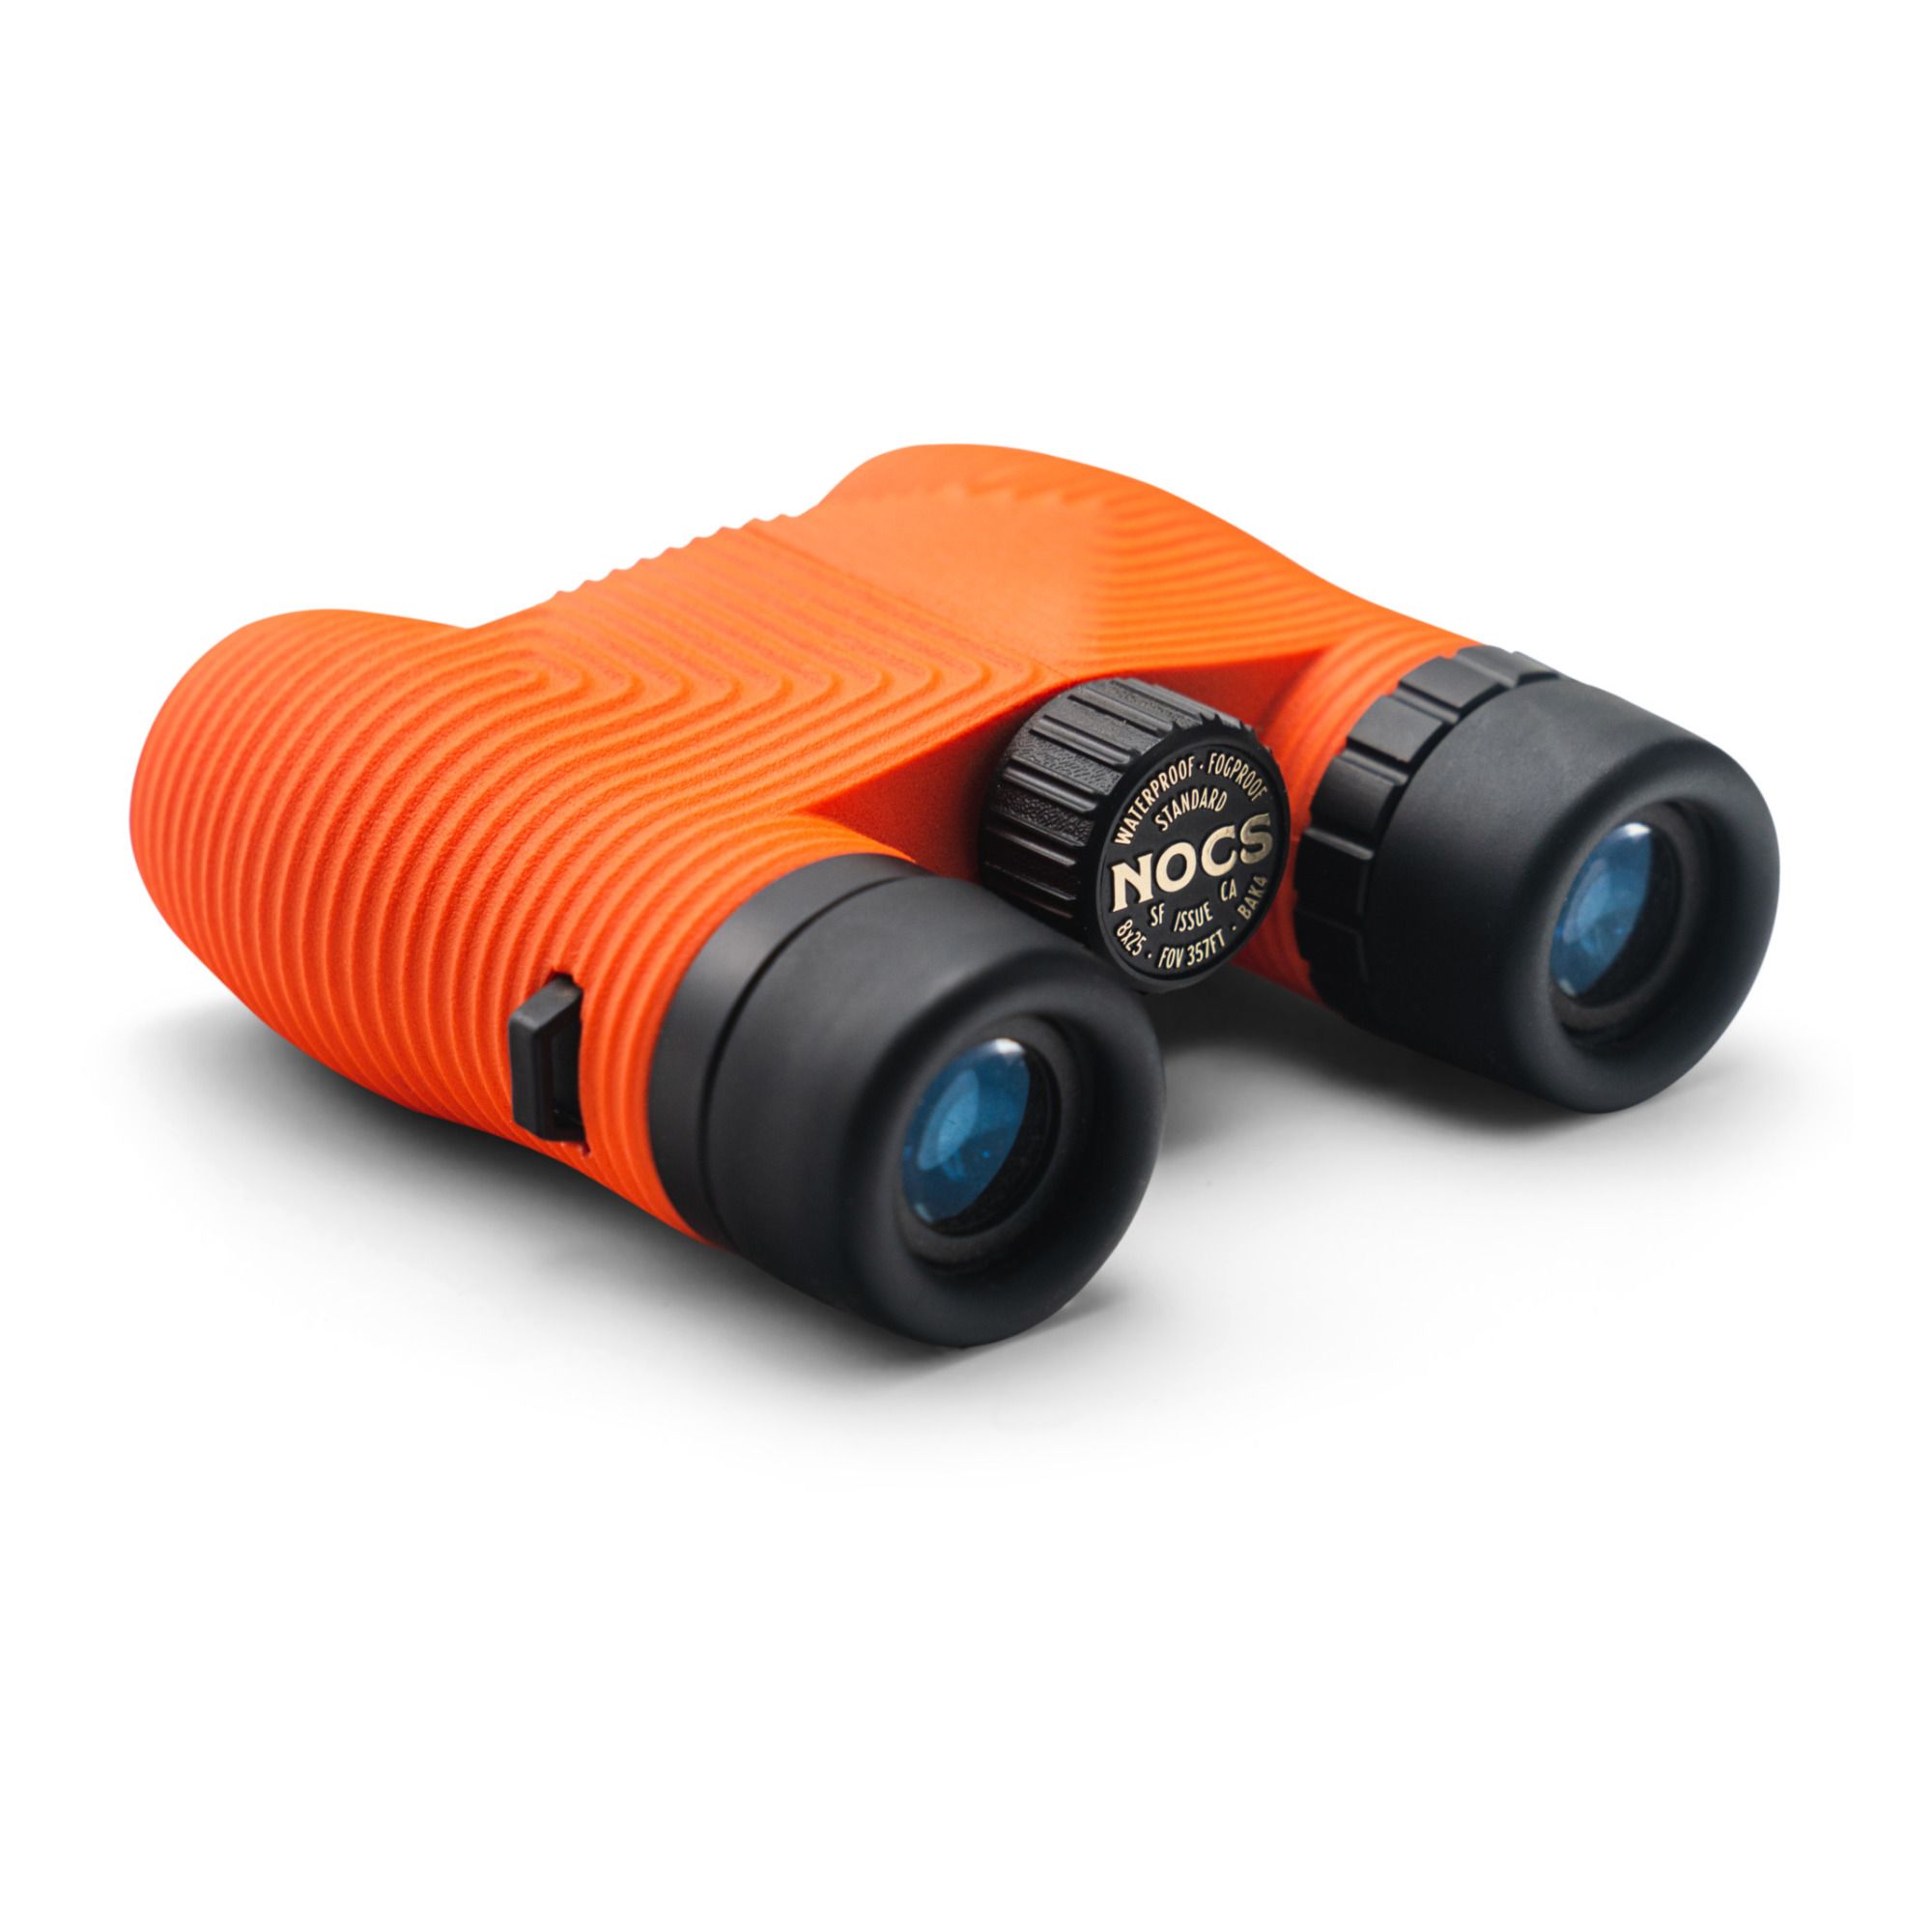 Nocs Provisions - Jumelles waterproof Binoculars - Orange